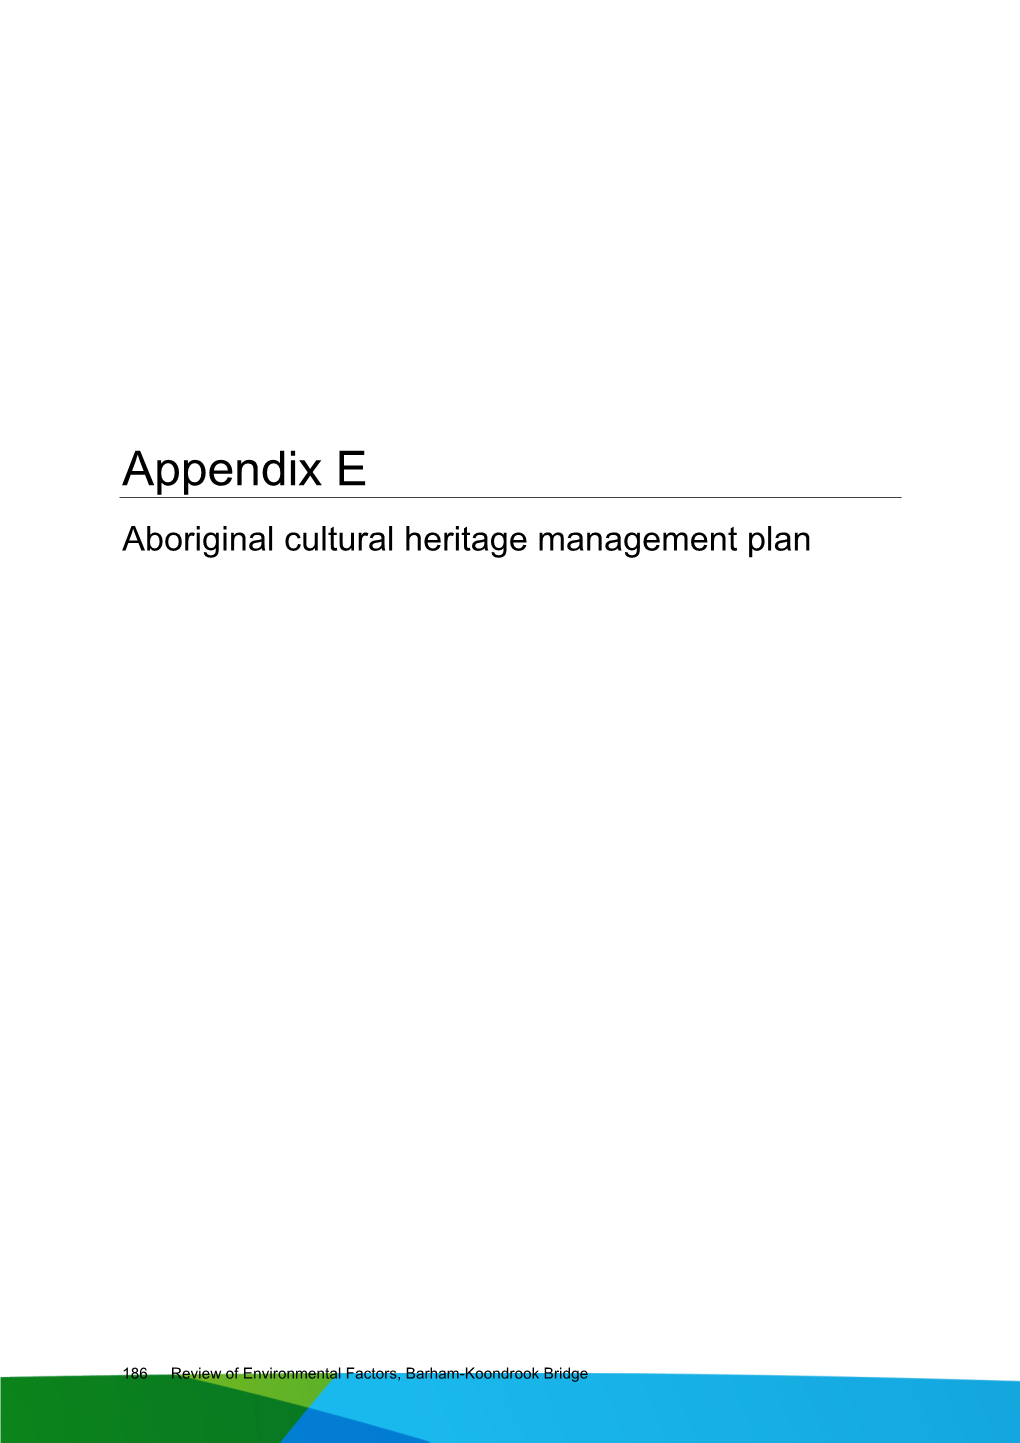 Barham Bridge REF Appendix E Aboriginal Cultural Heritage